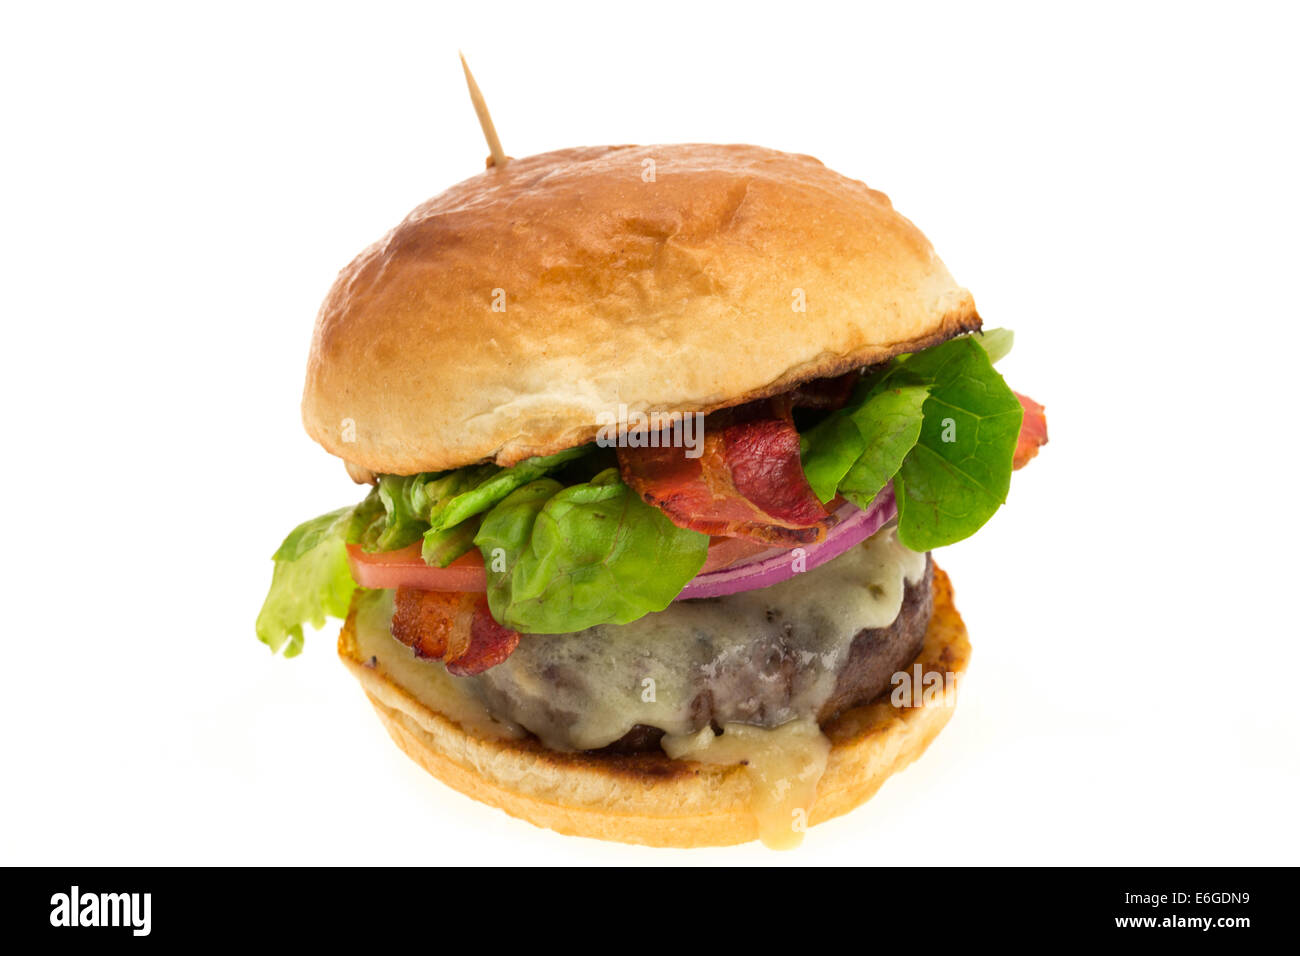 Cheeseburger con bacon e servita in una brioche bun - studio shot con uno sfondo bianco Foto Stock